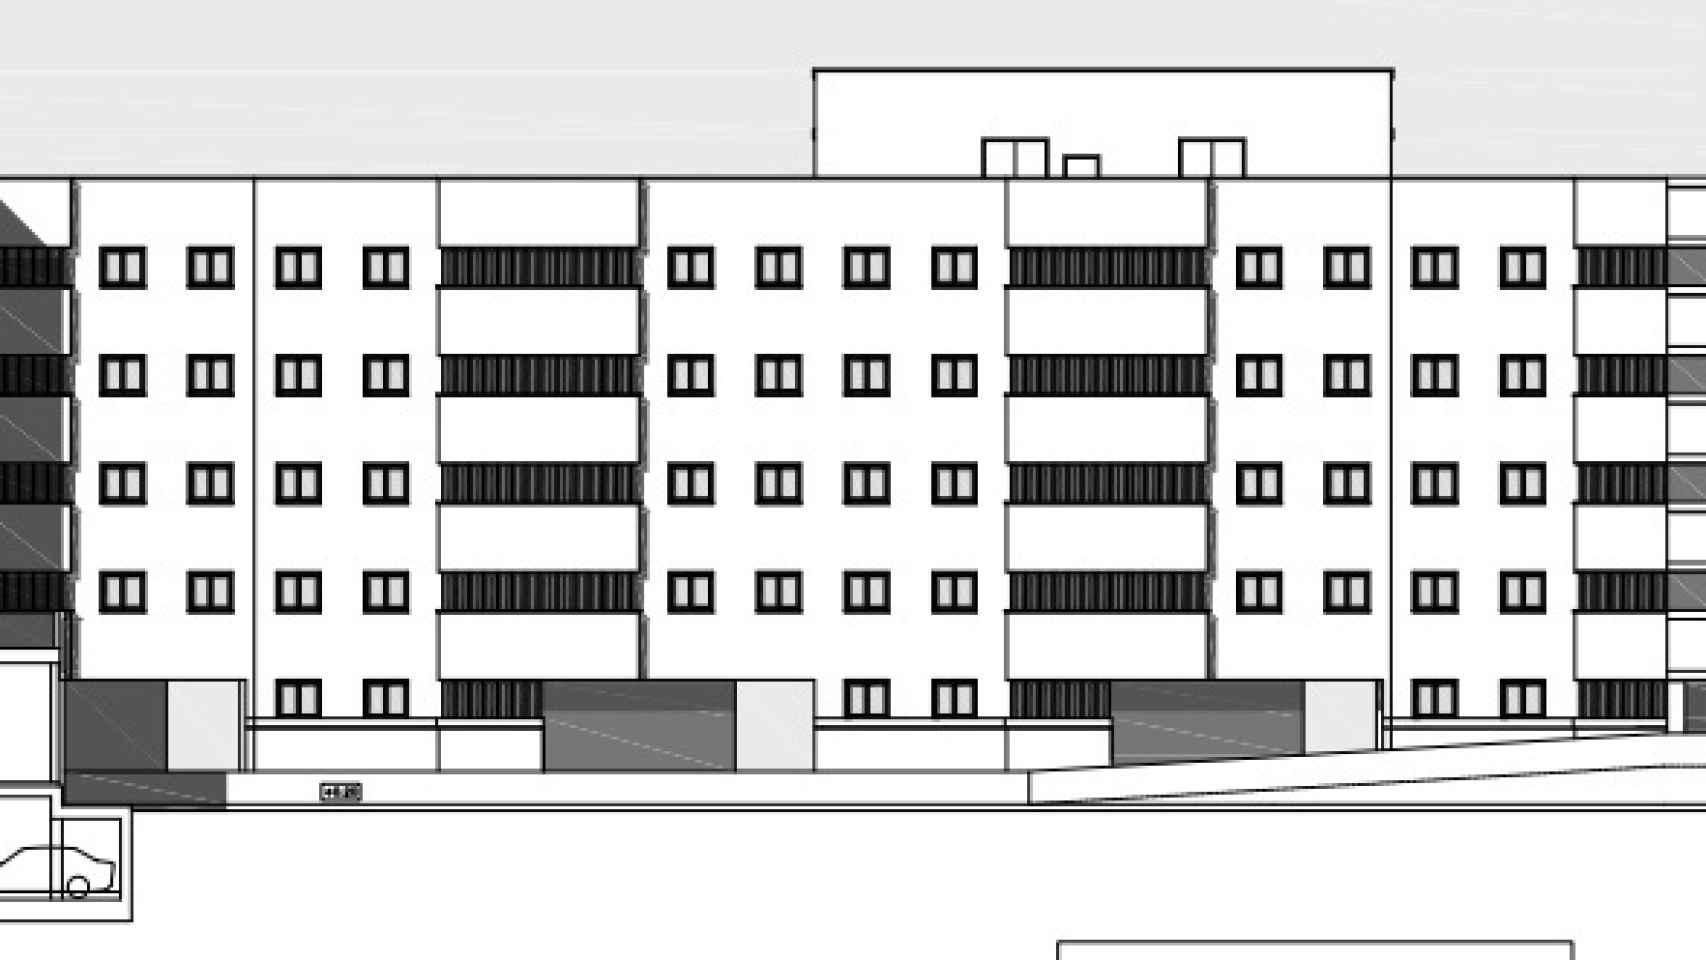 El edificio de viviendas tendrá una altura de cinco plantas y se distribuirá en dos bloques